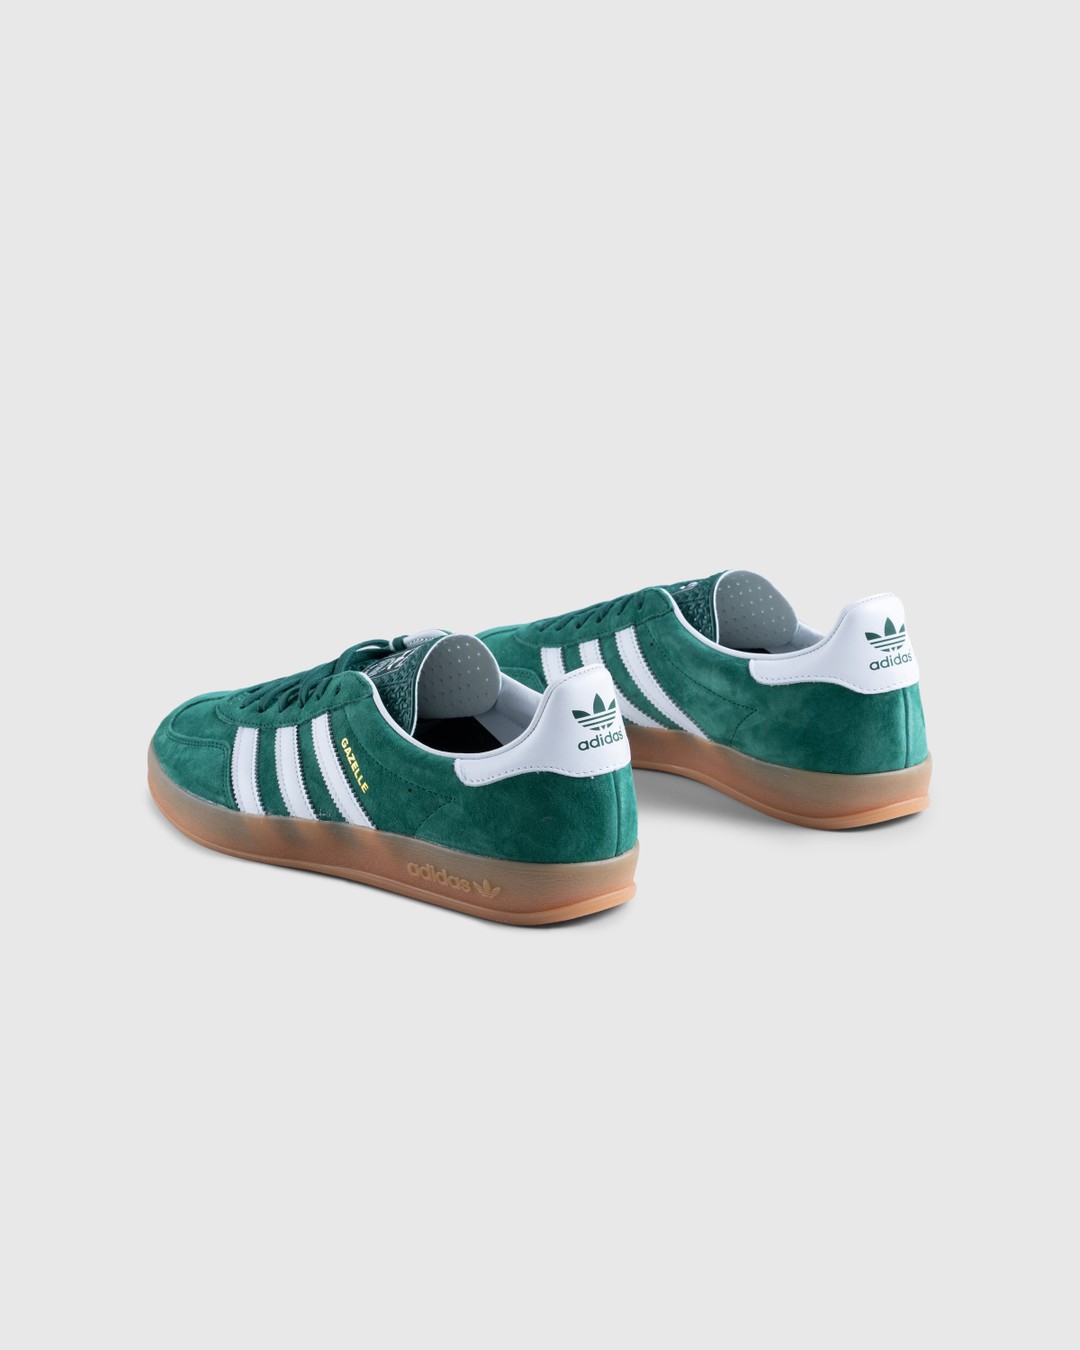 Adidas – Gazelle Indoor Collegiate Green